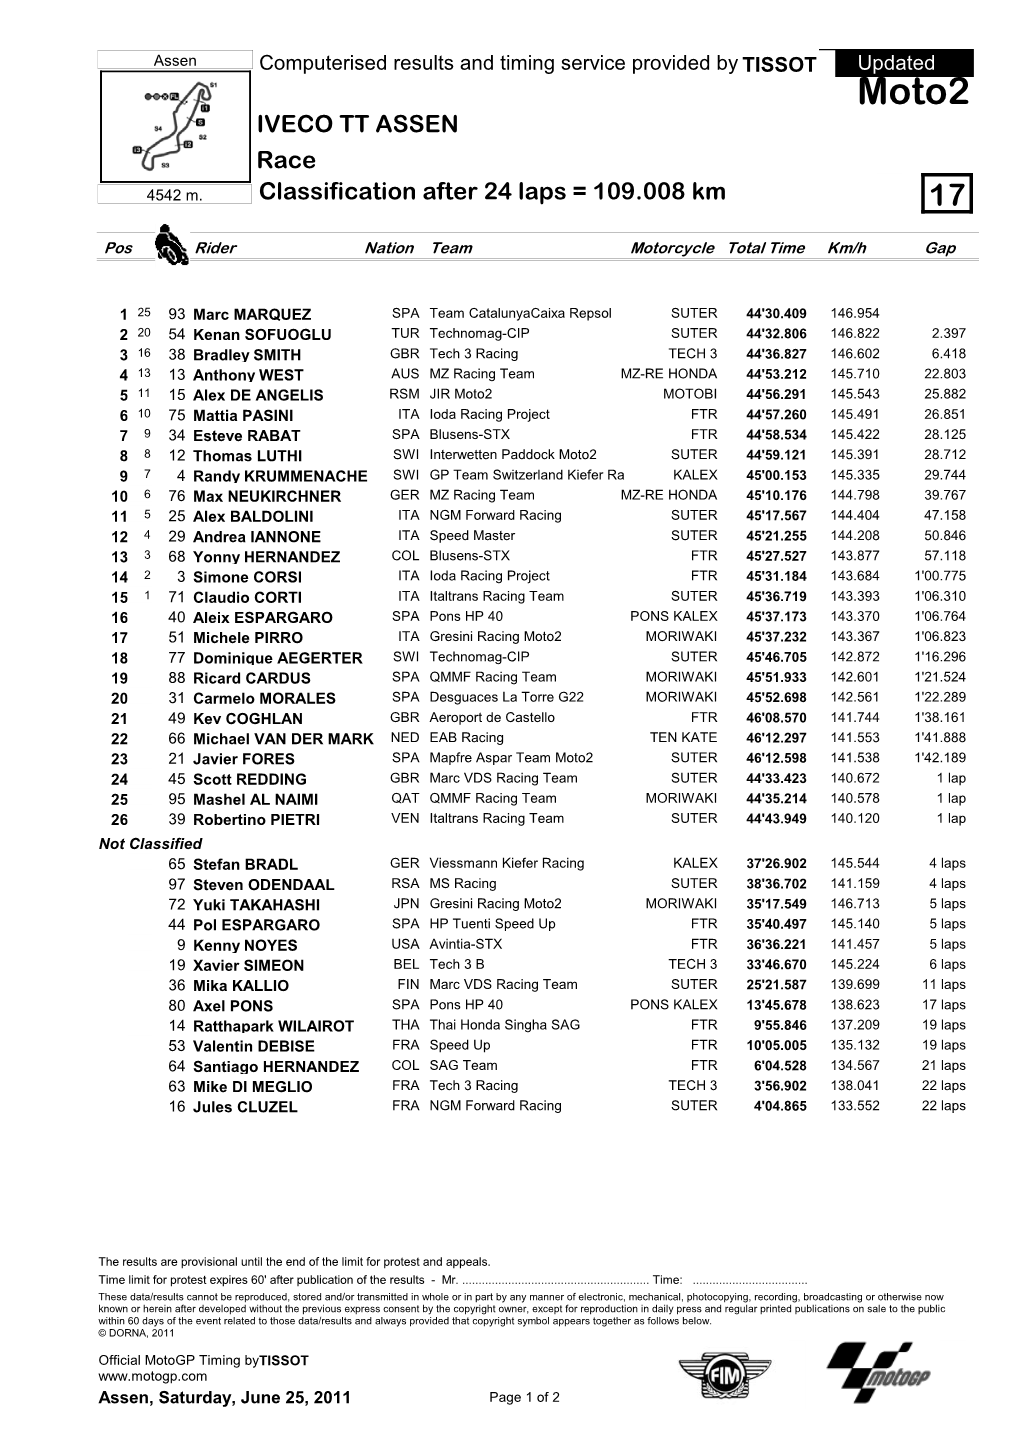 Moto2 IVECO TT ASSEN Race 4542 M